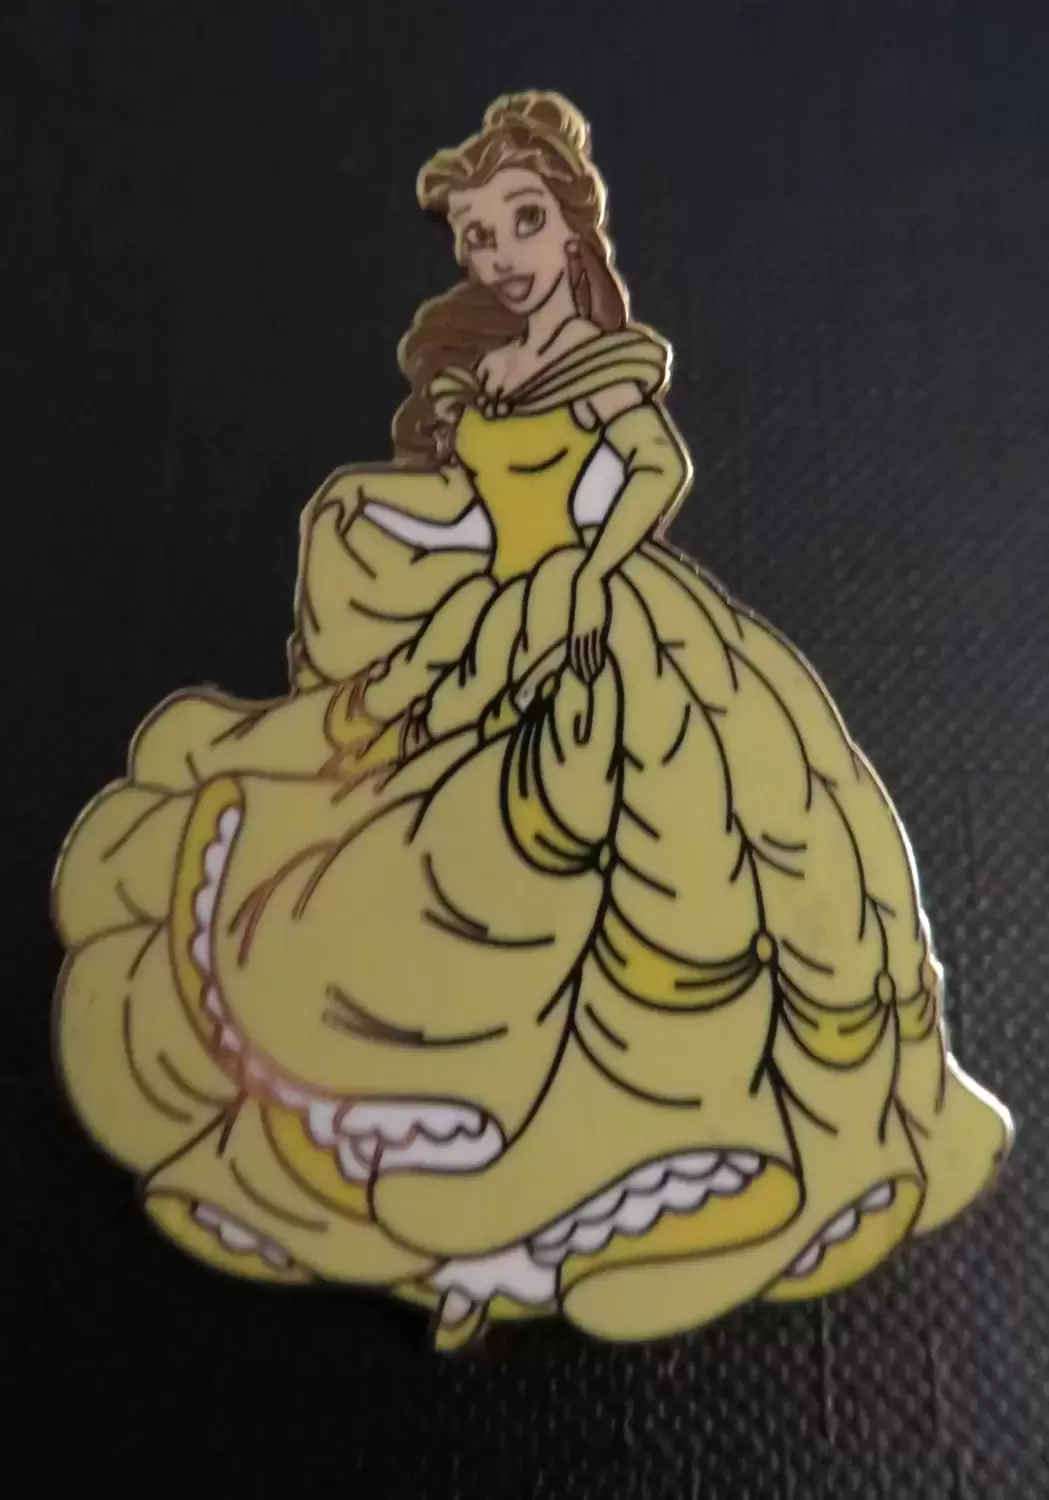 Disney Princess LE Pins - Belle